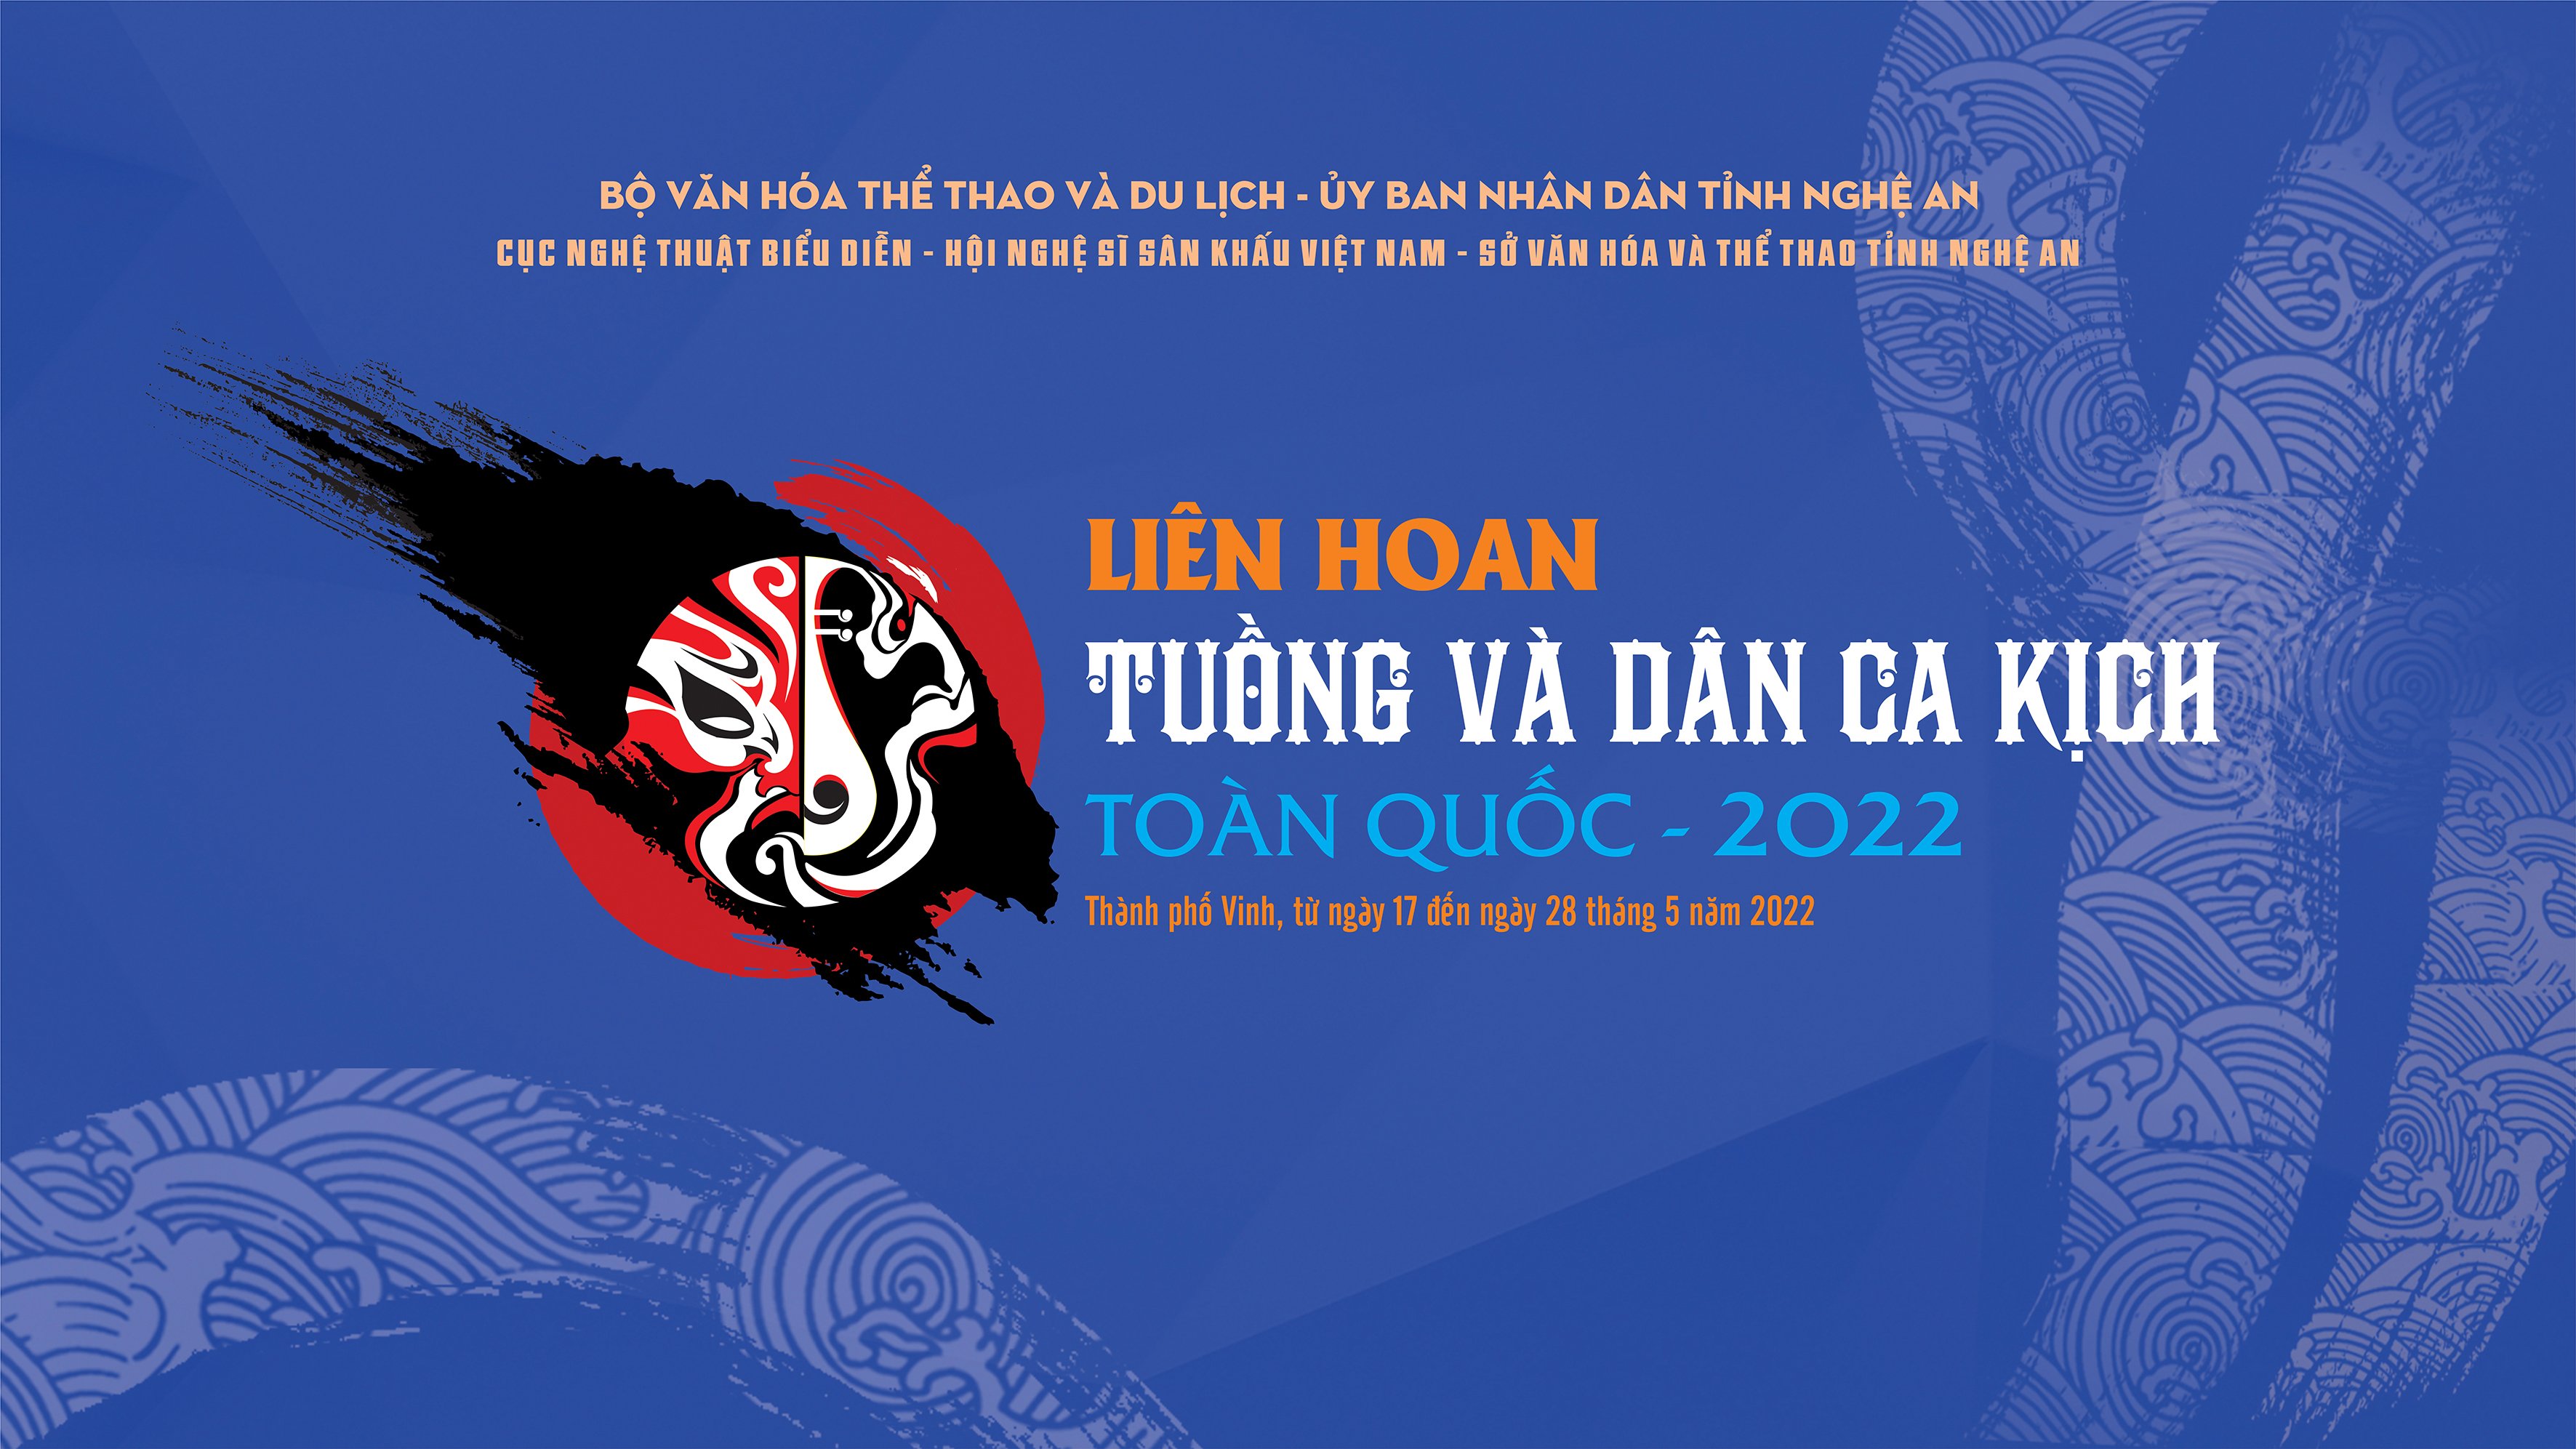 LIÊN HOAN TUỒNG VÀ DÂN CA KỊCH TOÀN QUỐC 2022 - CÔ THẦN- Nhà hát nghệ thuật truyền thống Bình Định